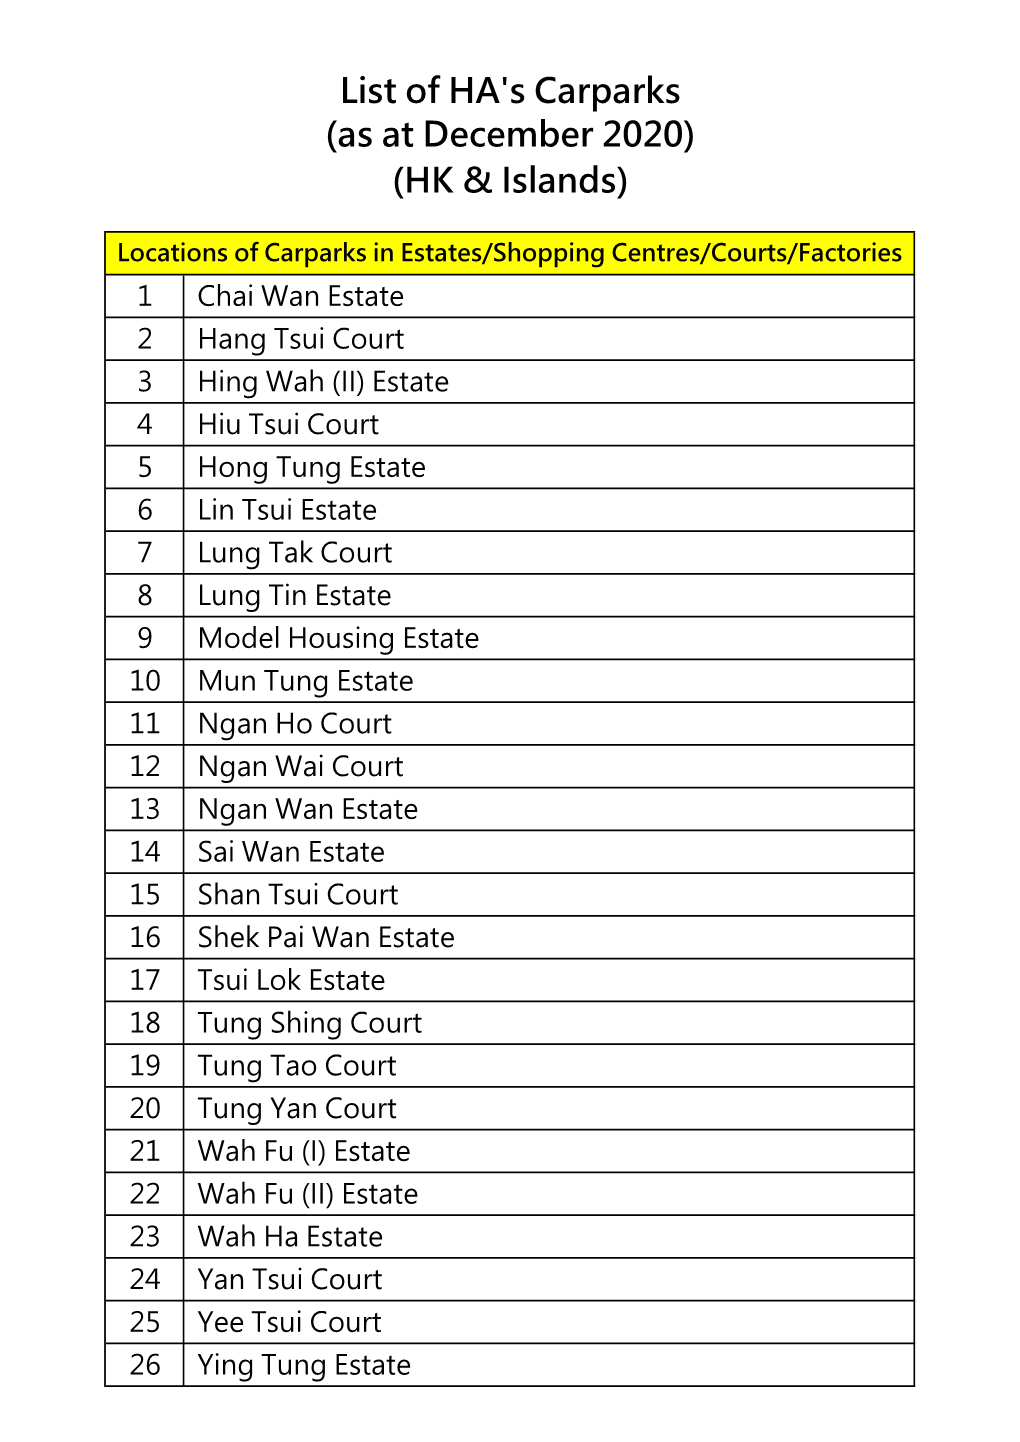 List of HA's Carparks (As at December 2020) (HK & Islands)